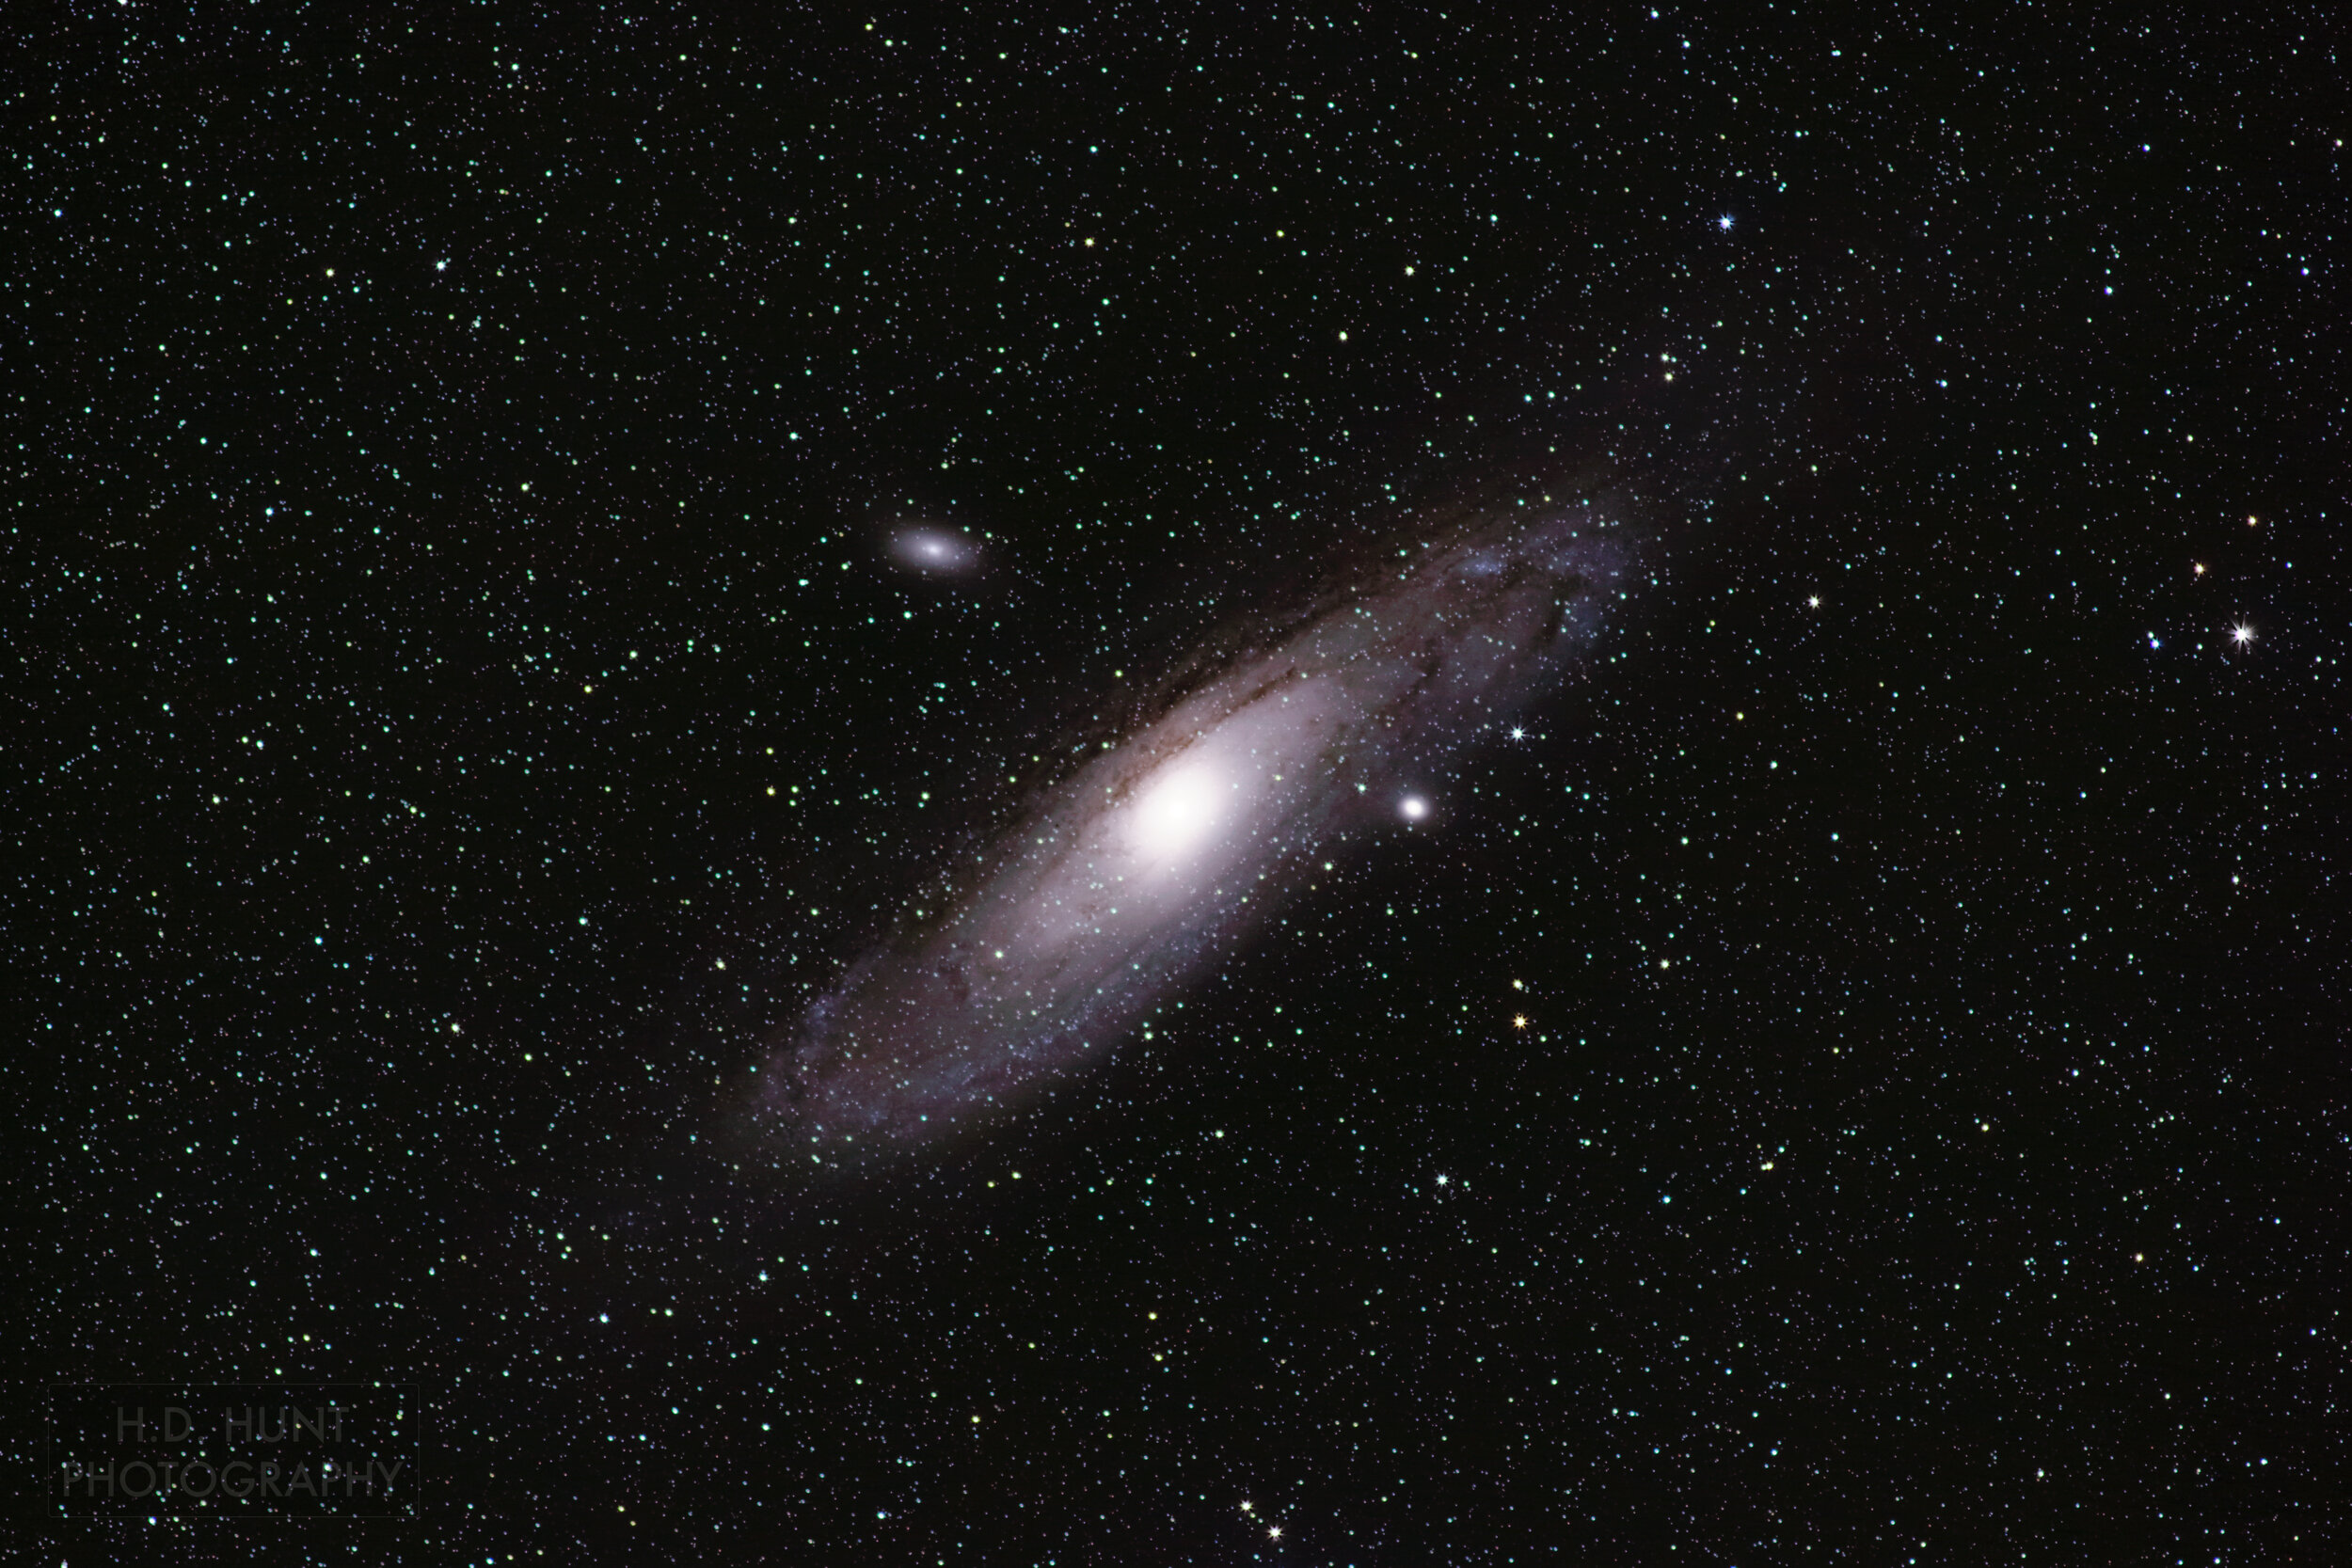 M31 (Andromeda Galaxy) - September 2021